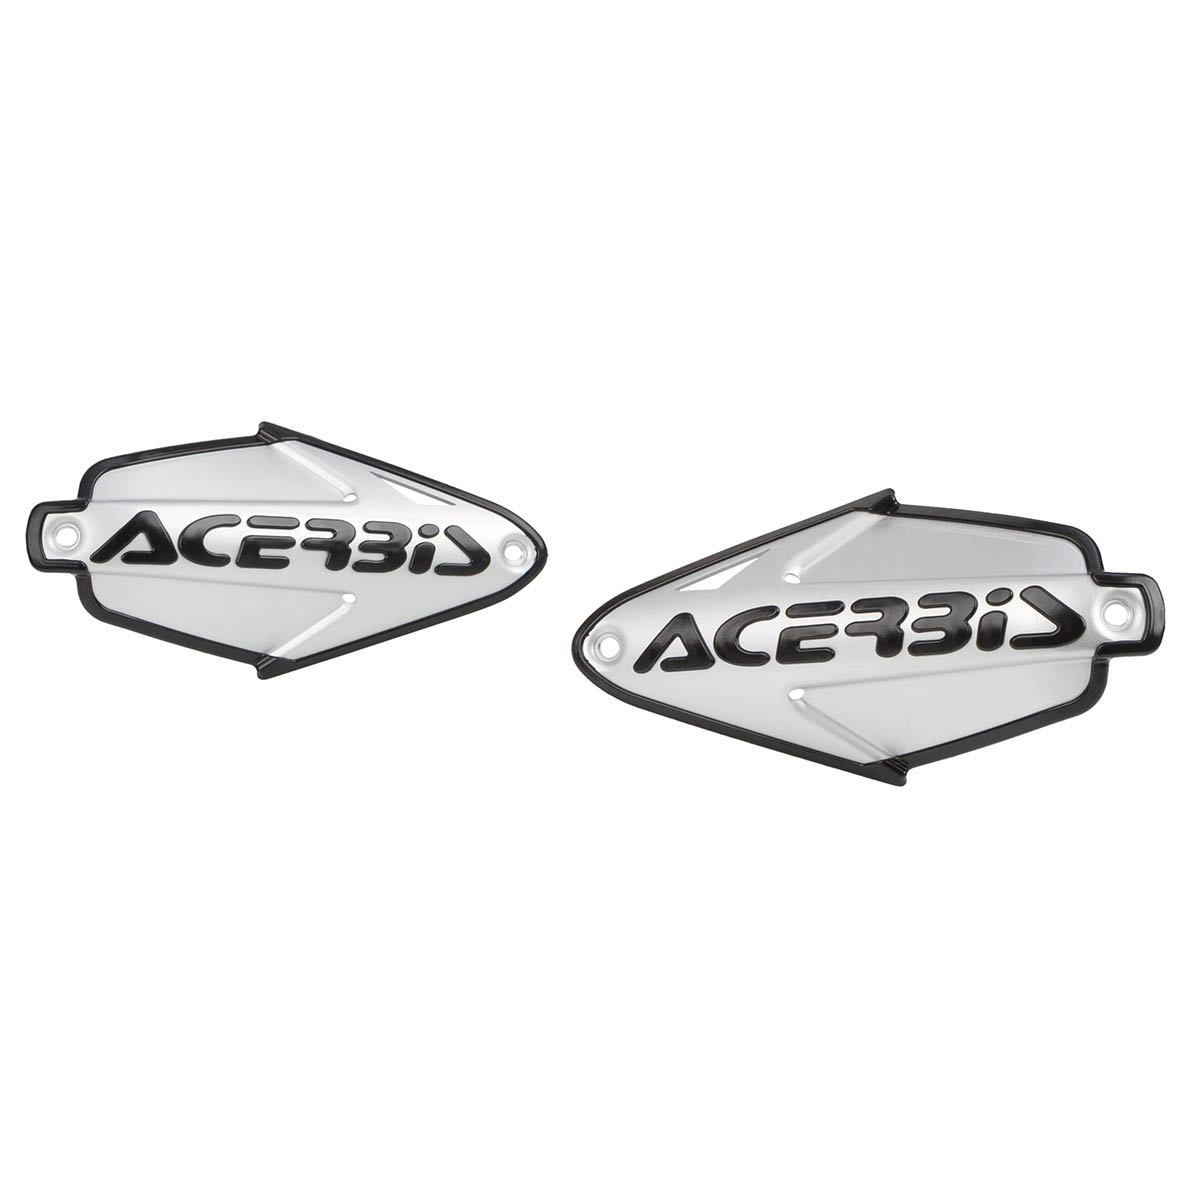 Acerbis Remplacement Plastique pour Protège Mains Multiplo R Aluminum, Argent